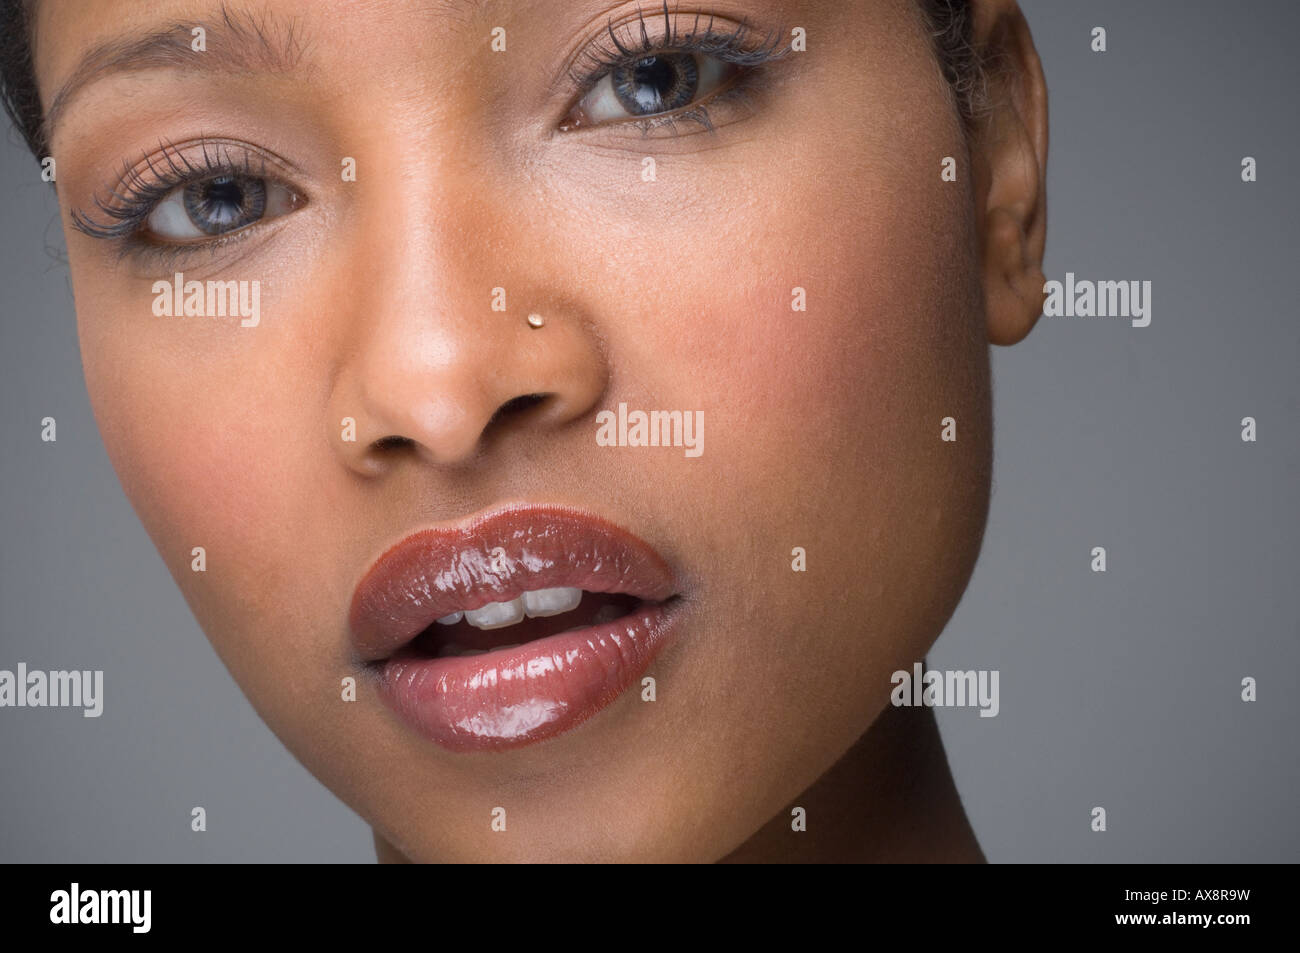 Femme africaine avec anneau dans le nez Photo Stock - Alamy